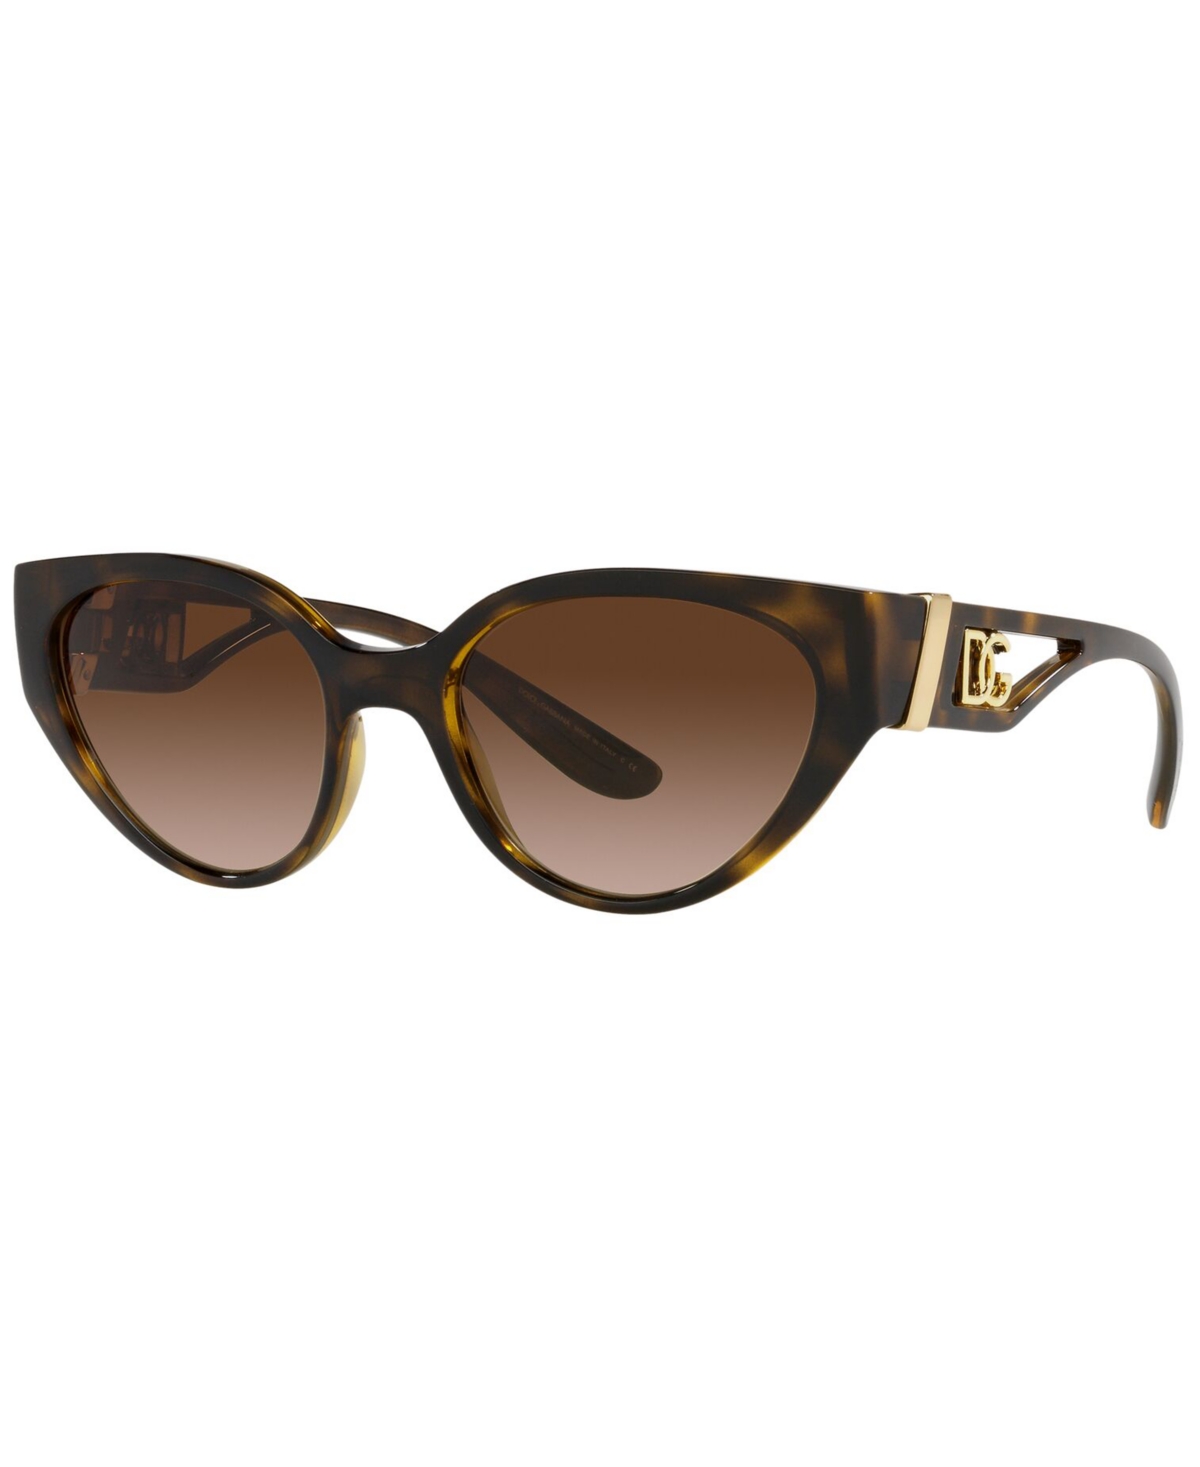 Dolce & Gabbana Women's Sunglasses, Dg6146 54 In Havana,gradient Brown